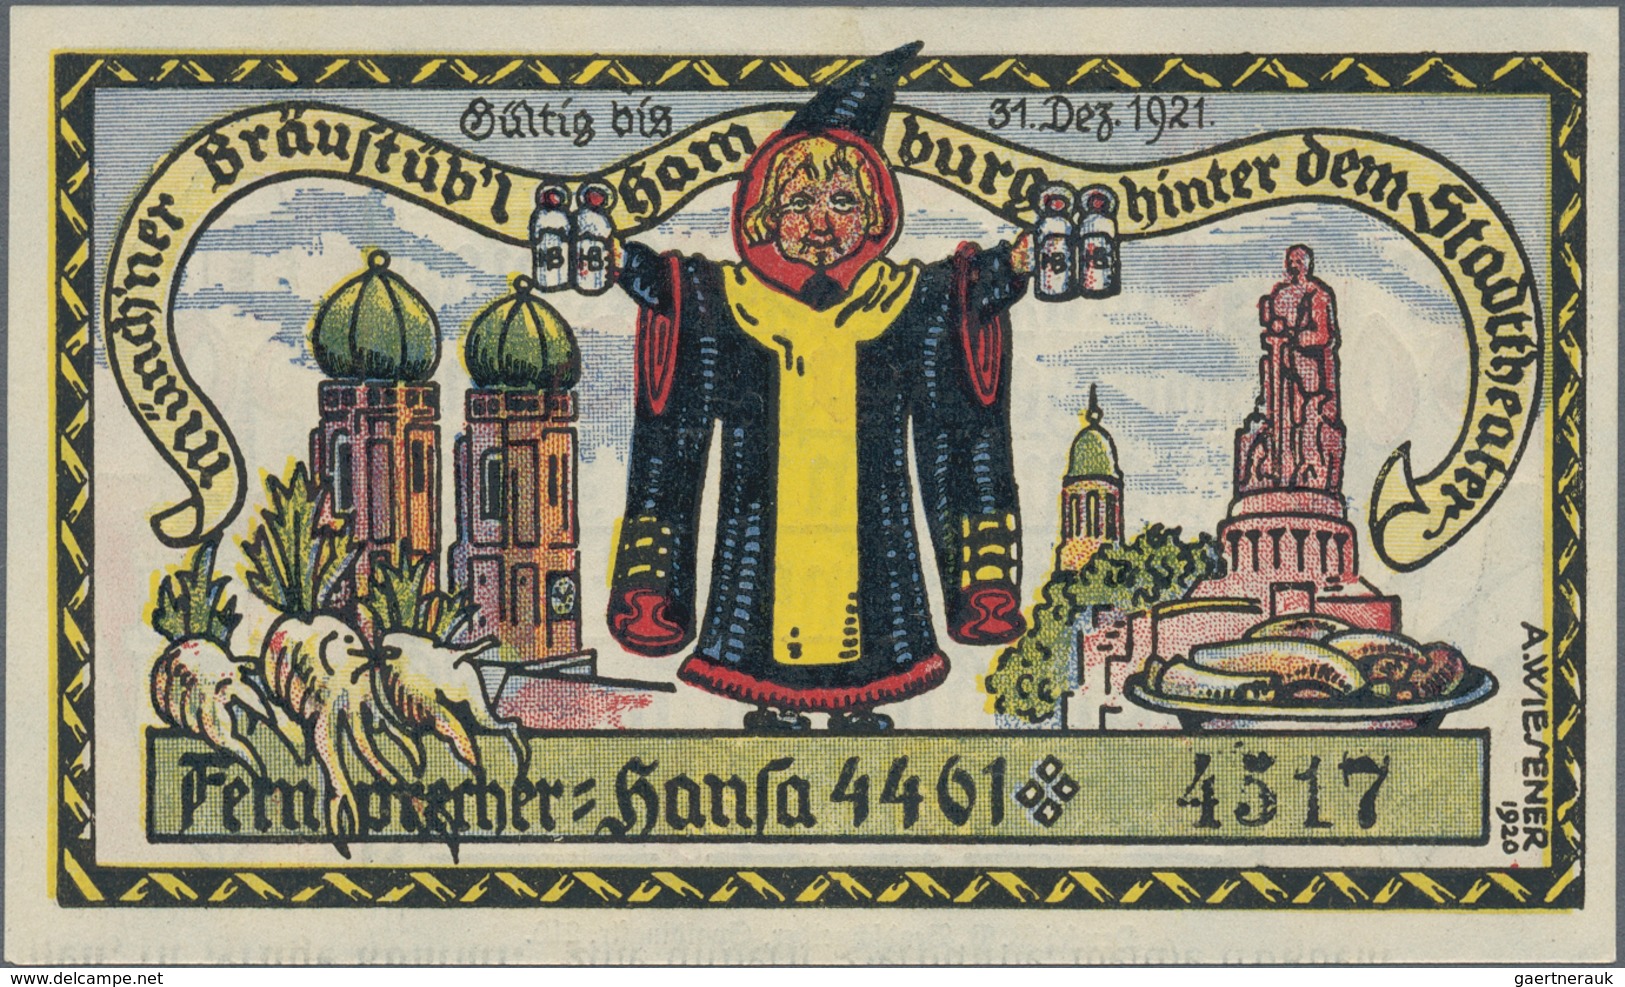 Deutschland - Notgeld: Serienscheine, Sammlung von über 2500 Scheinen chronologisch in vier Alben. E